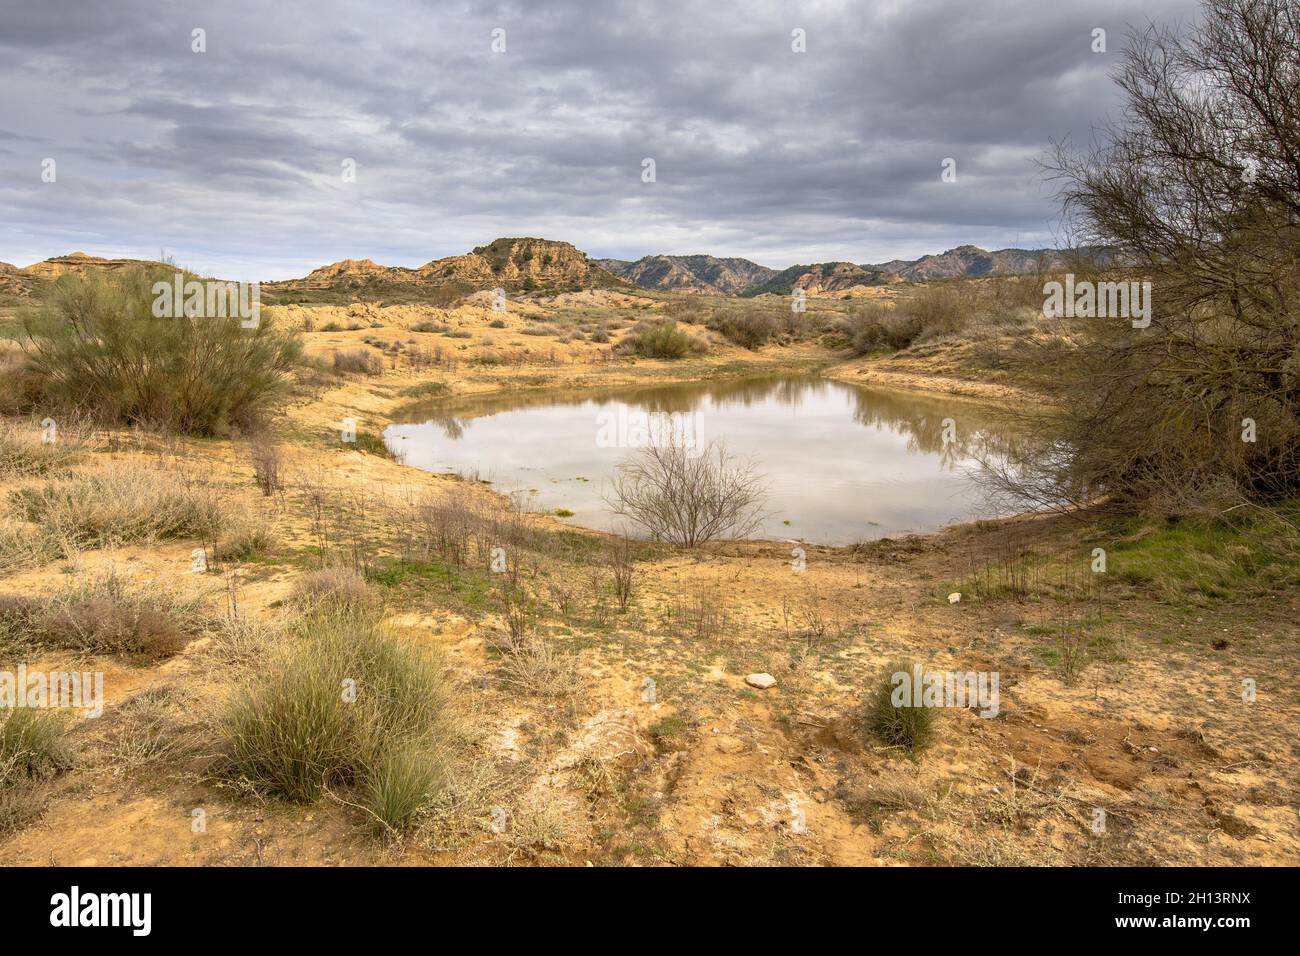 Réservoir d'eau dans le paysage aride de Castejon de Monegros dans les montagnes d'Alcubierre, Aragon, Espagne Banque D'Images